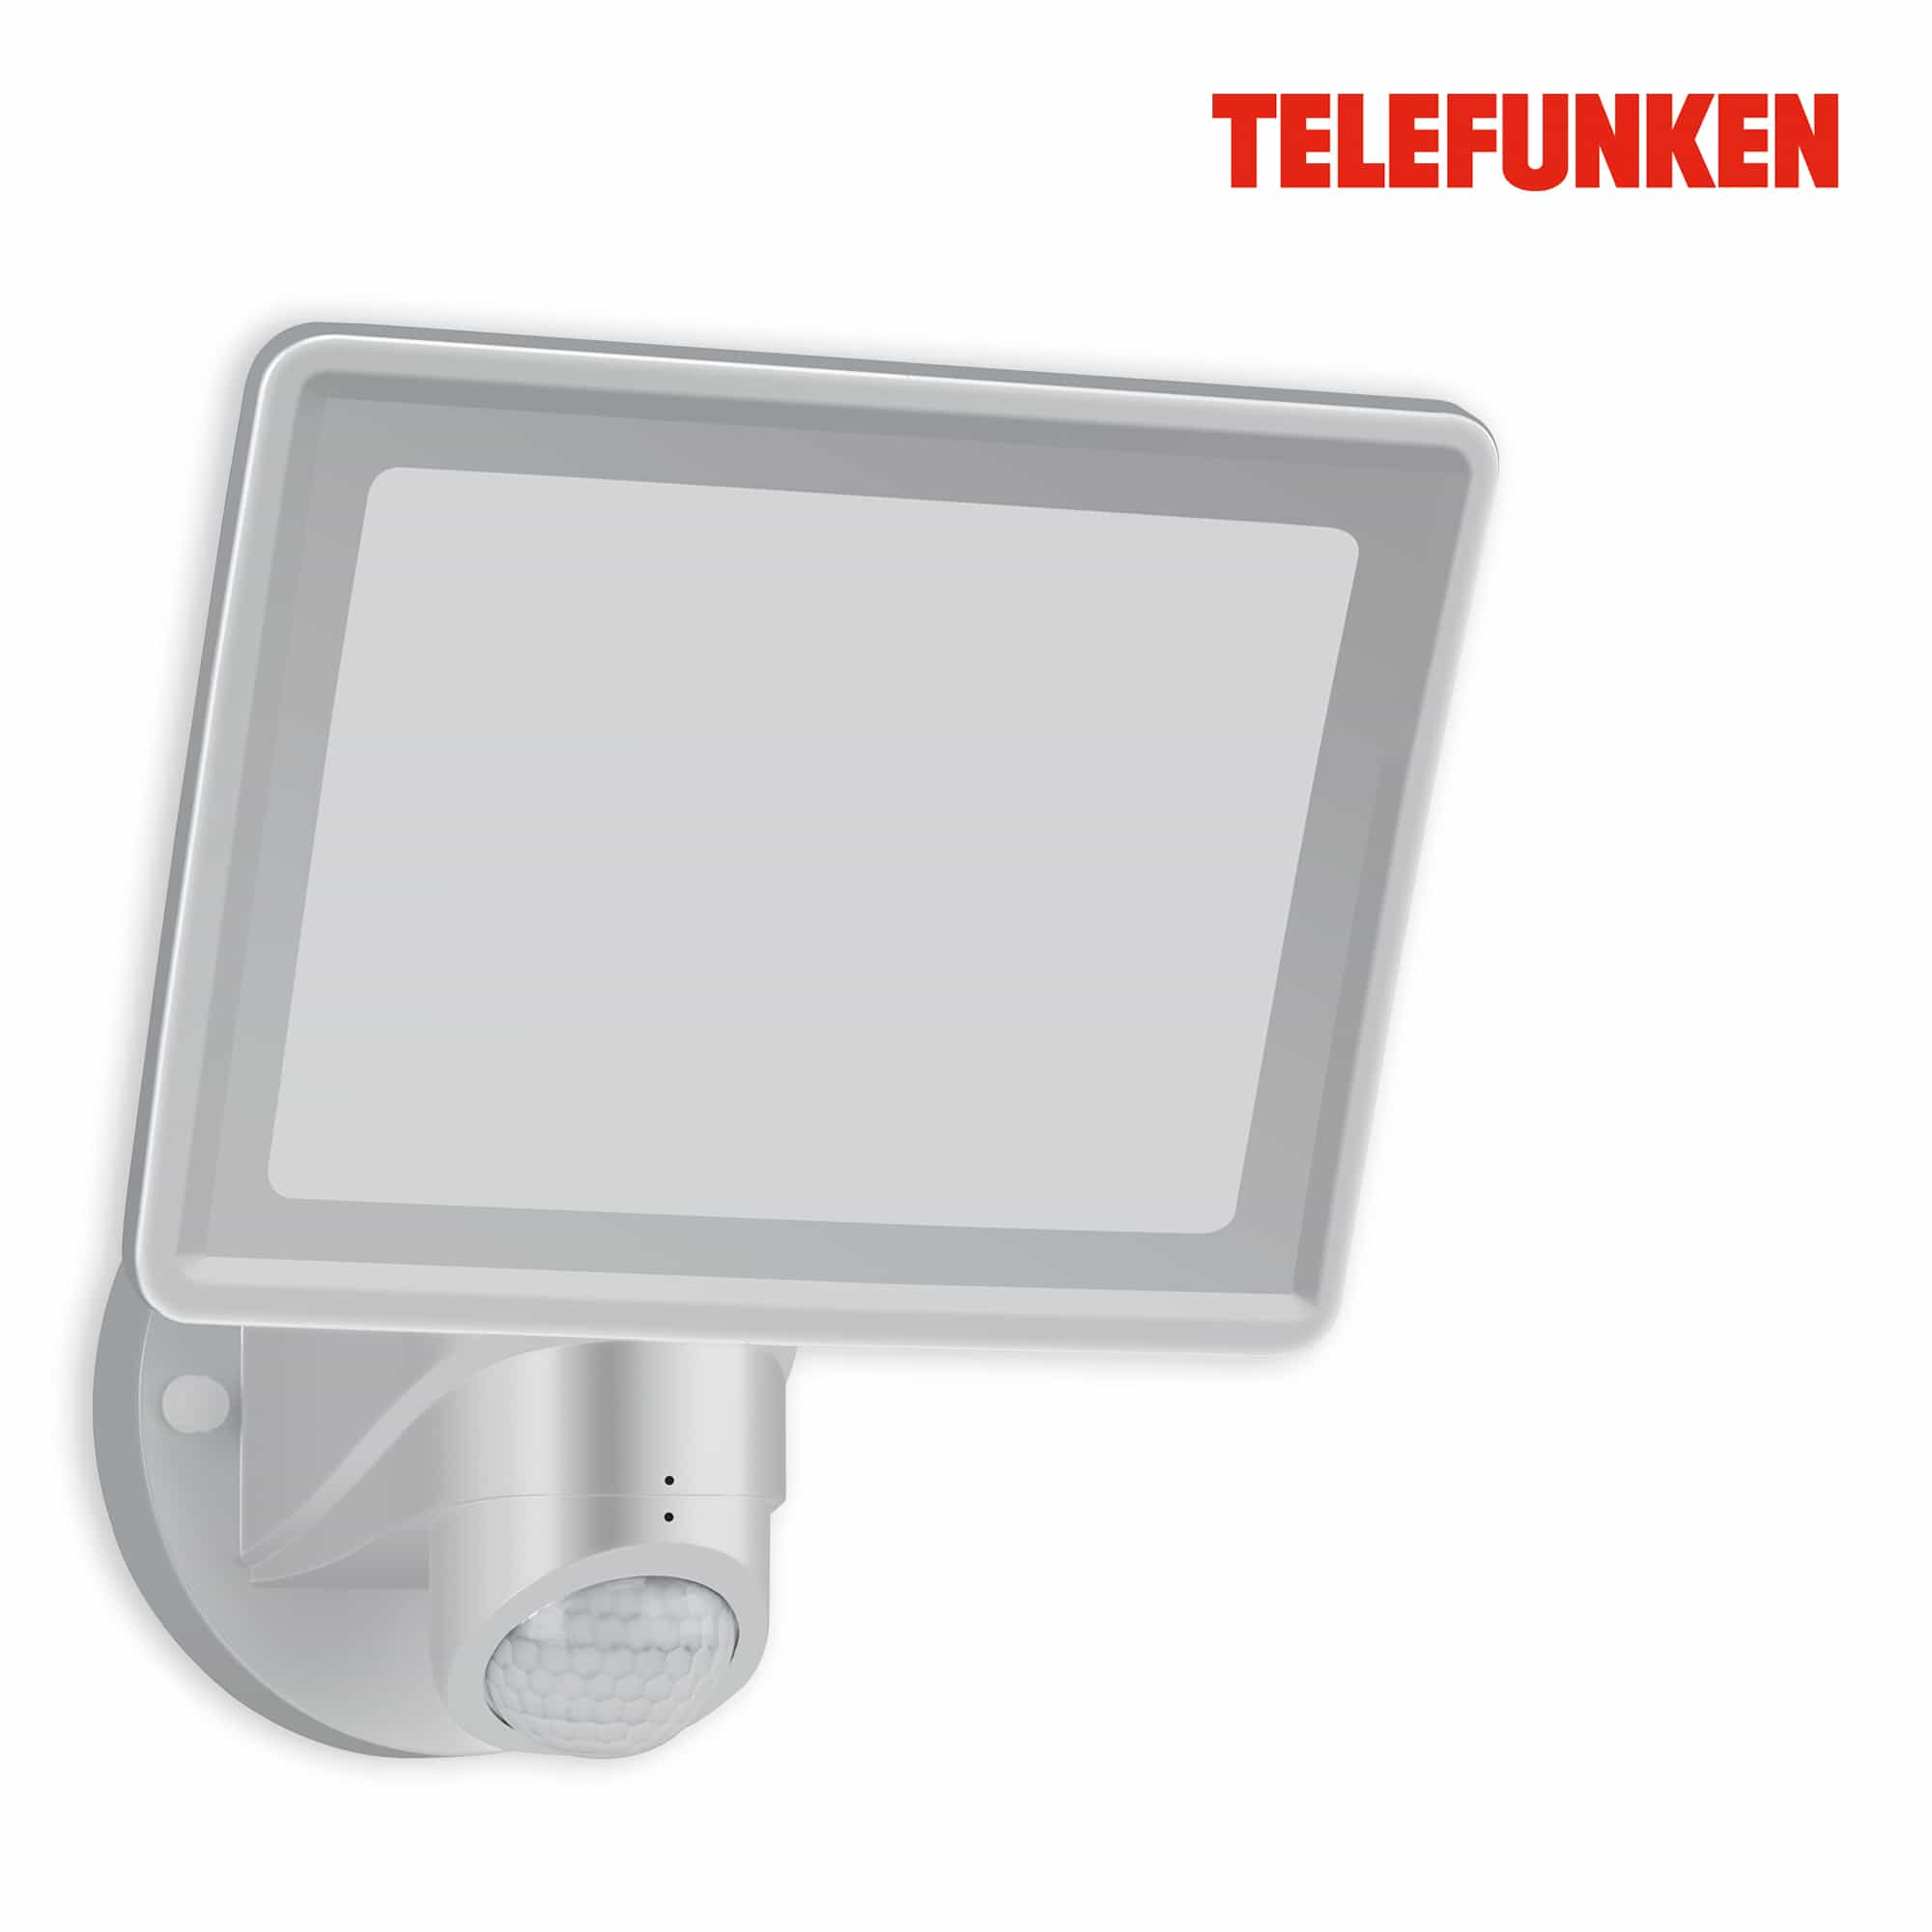 TELEFUNKEN LED Sensor Außenstrahler, 26,3 cm, 20 W, Silber